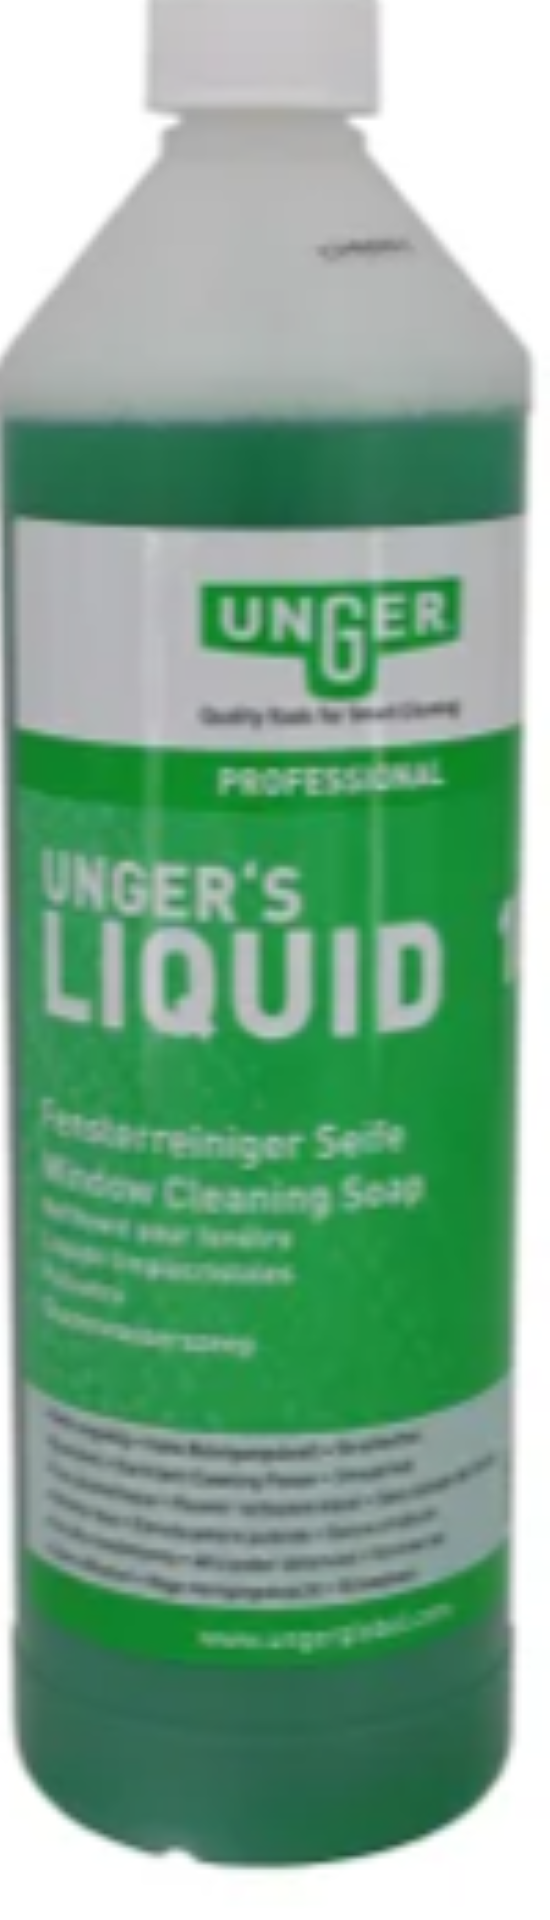 Unger | Liquid | Fensterreinigungsseife | 1 Liter